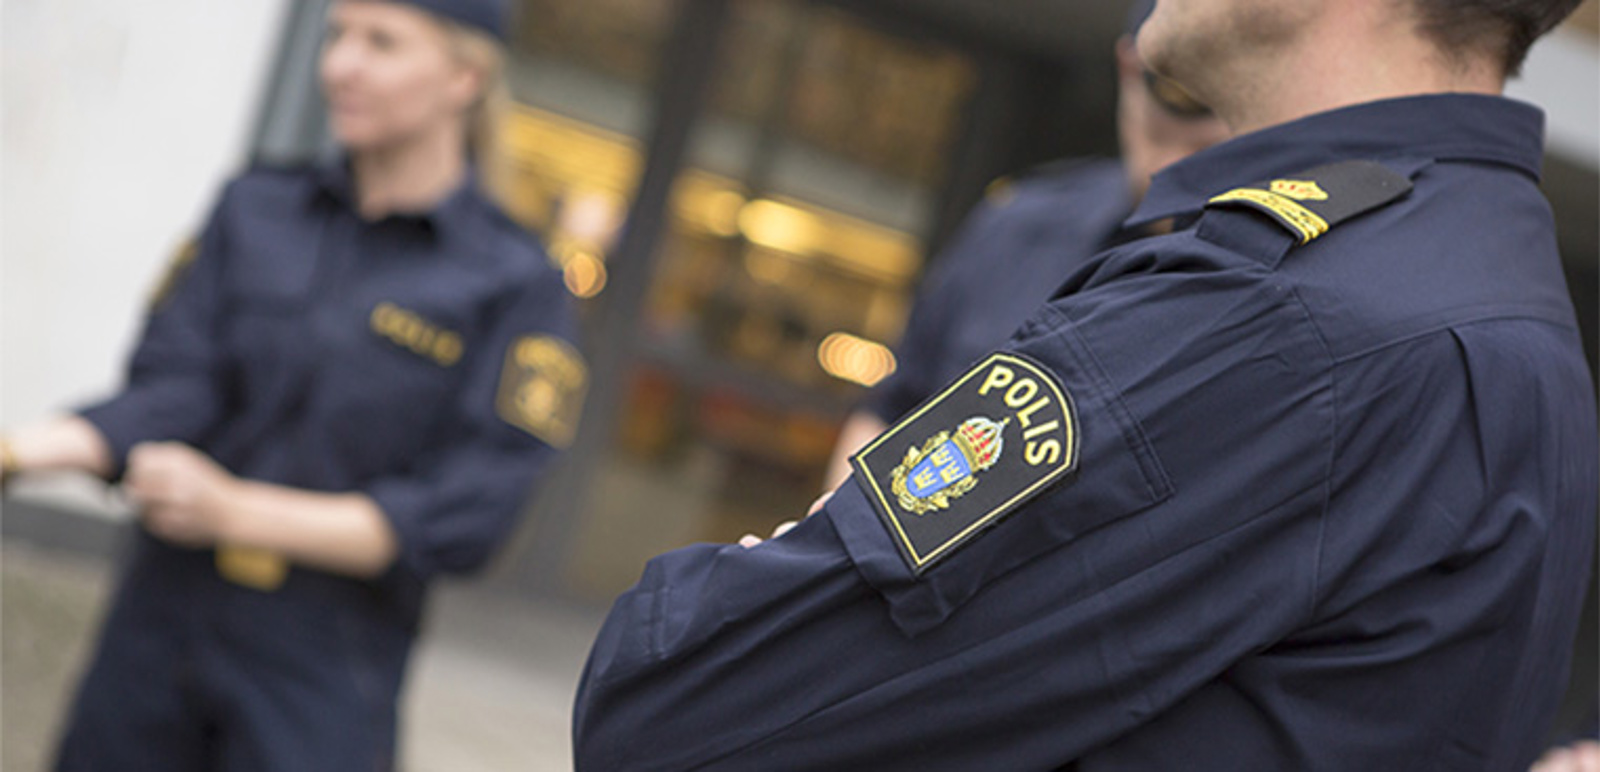 Polisutbildning Högskolan i Borås. Foto: Suss Wilén